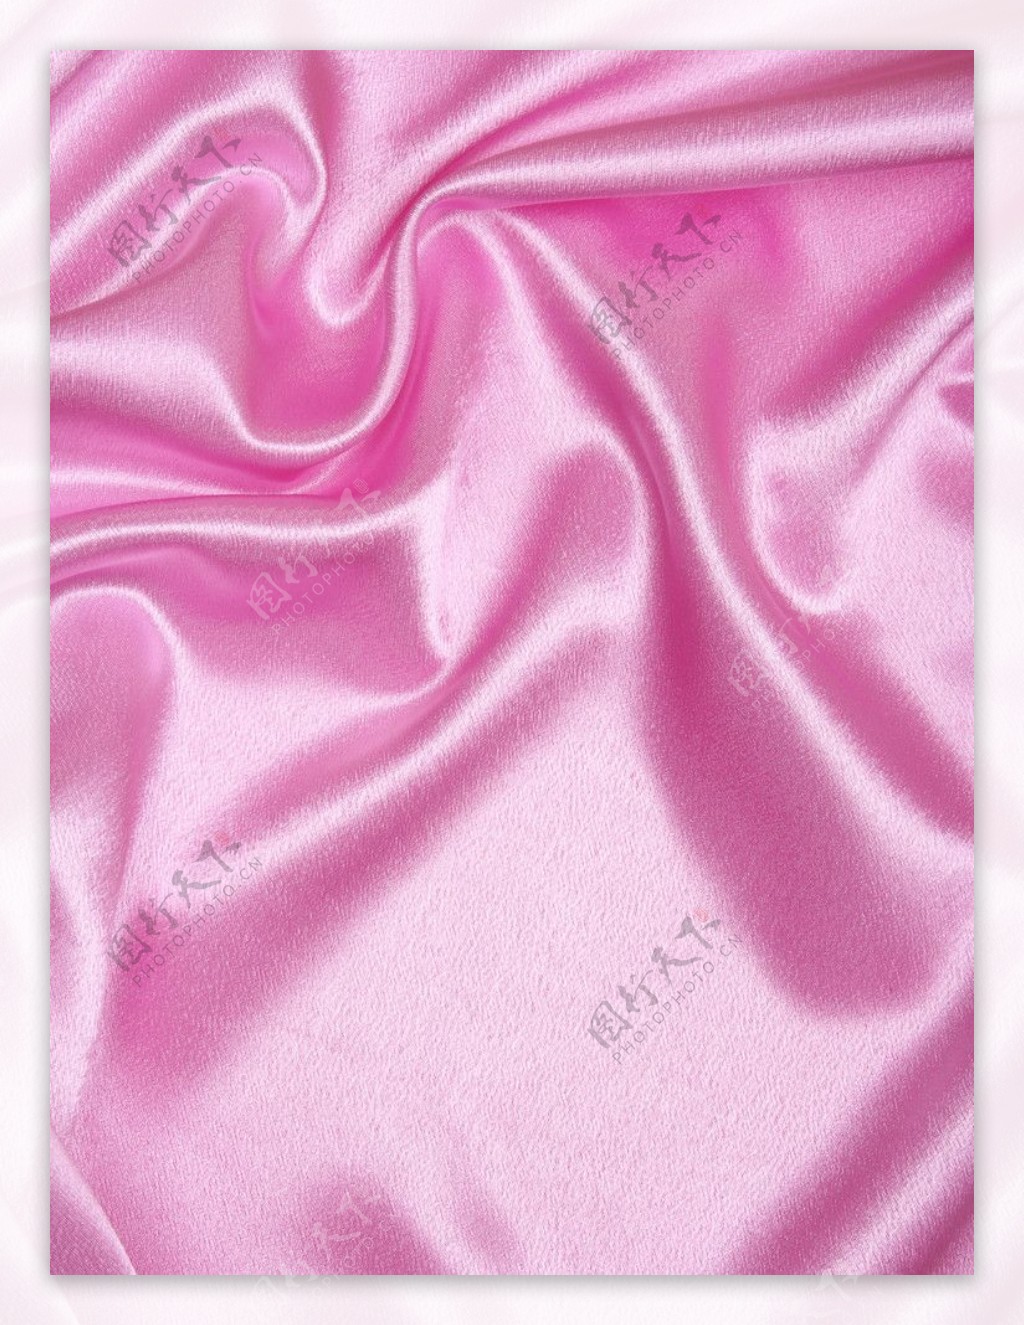 粉色绸缎丝绸图片